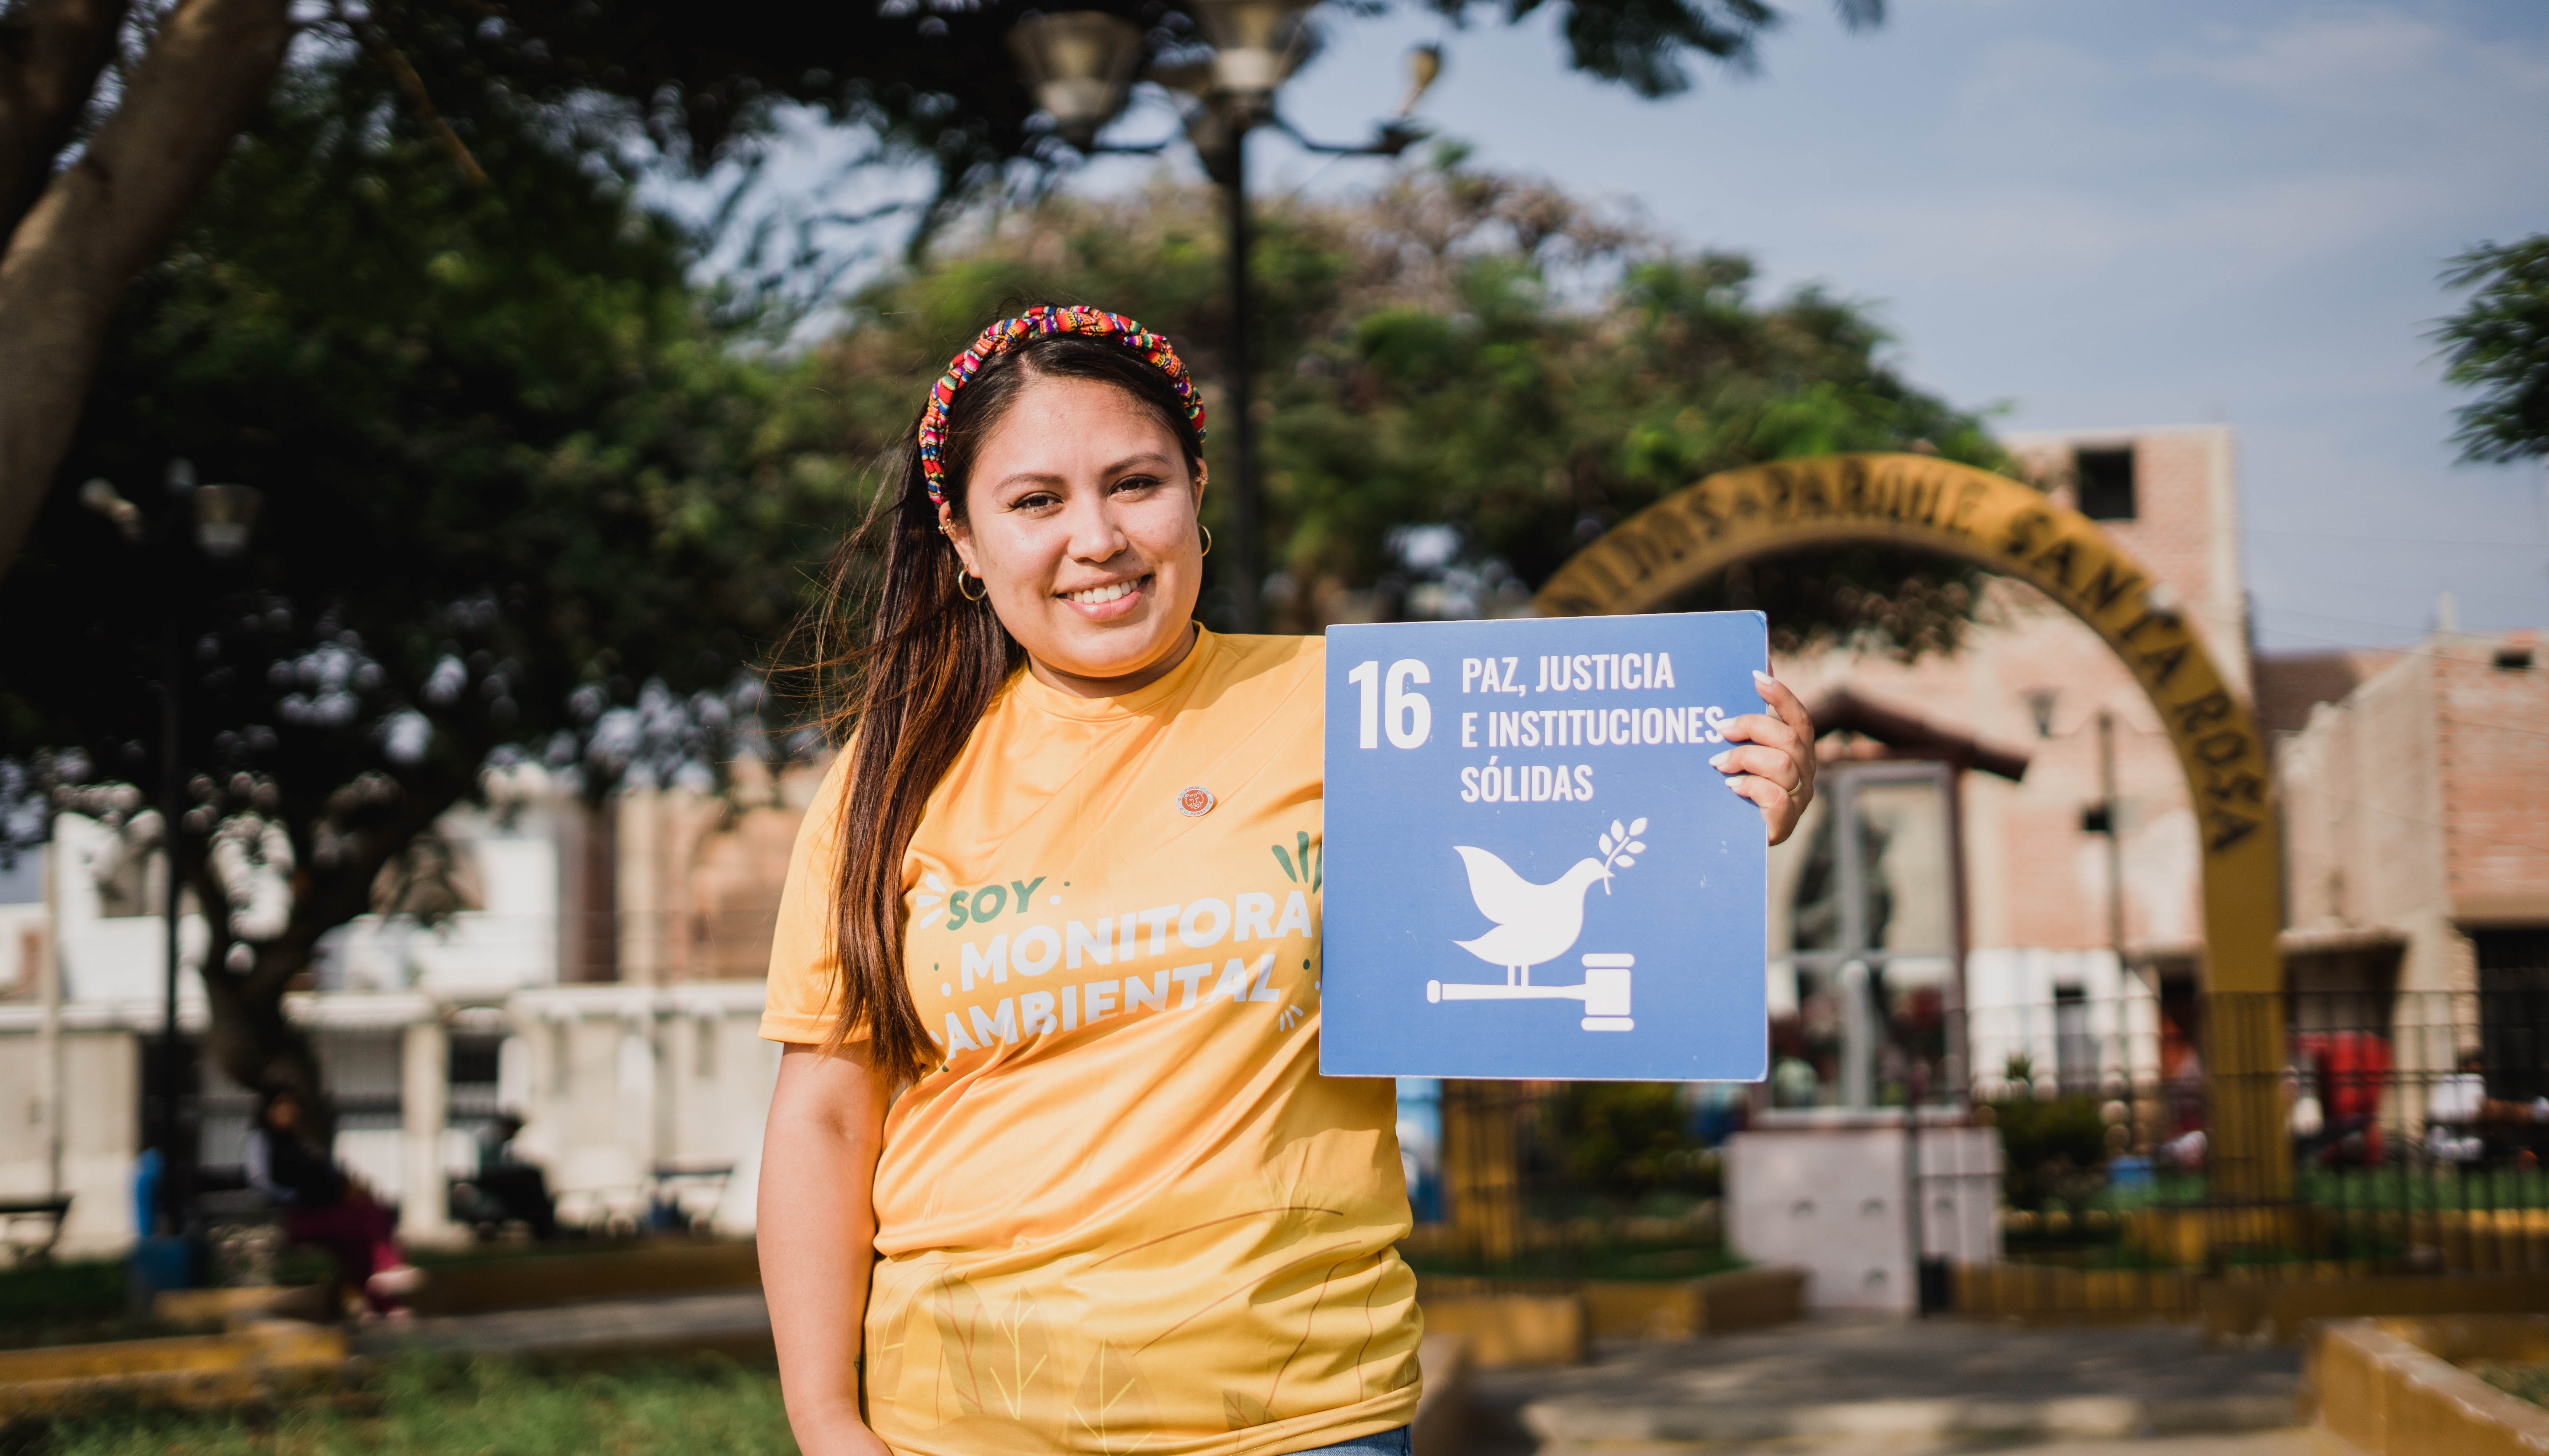 Read Monitoreo ambiental: transformando vidas y territorios by PNUD Perú